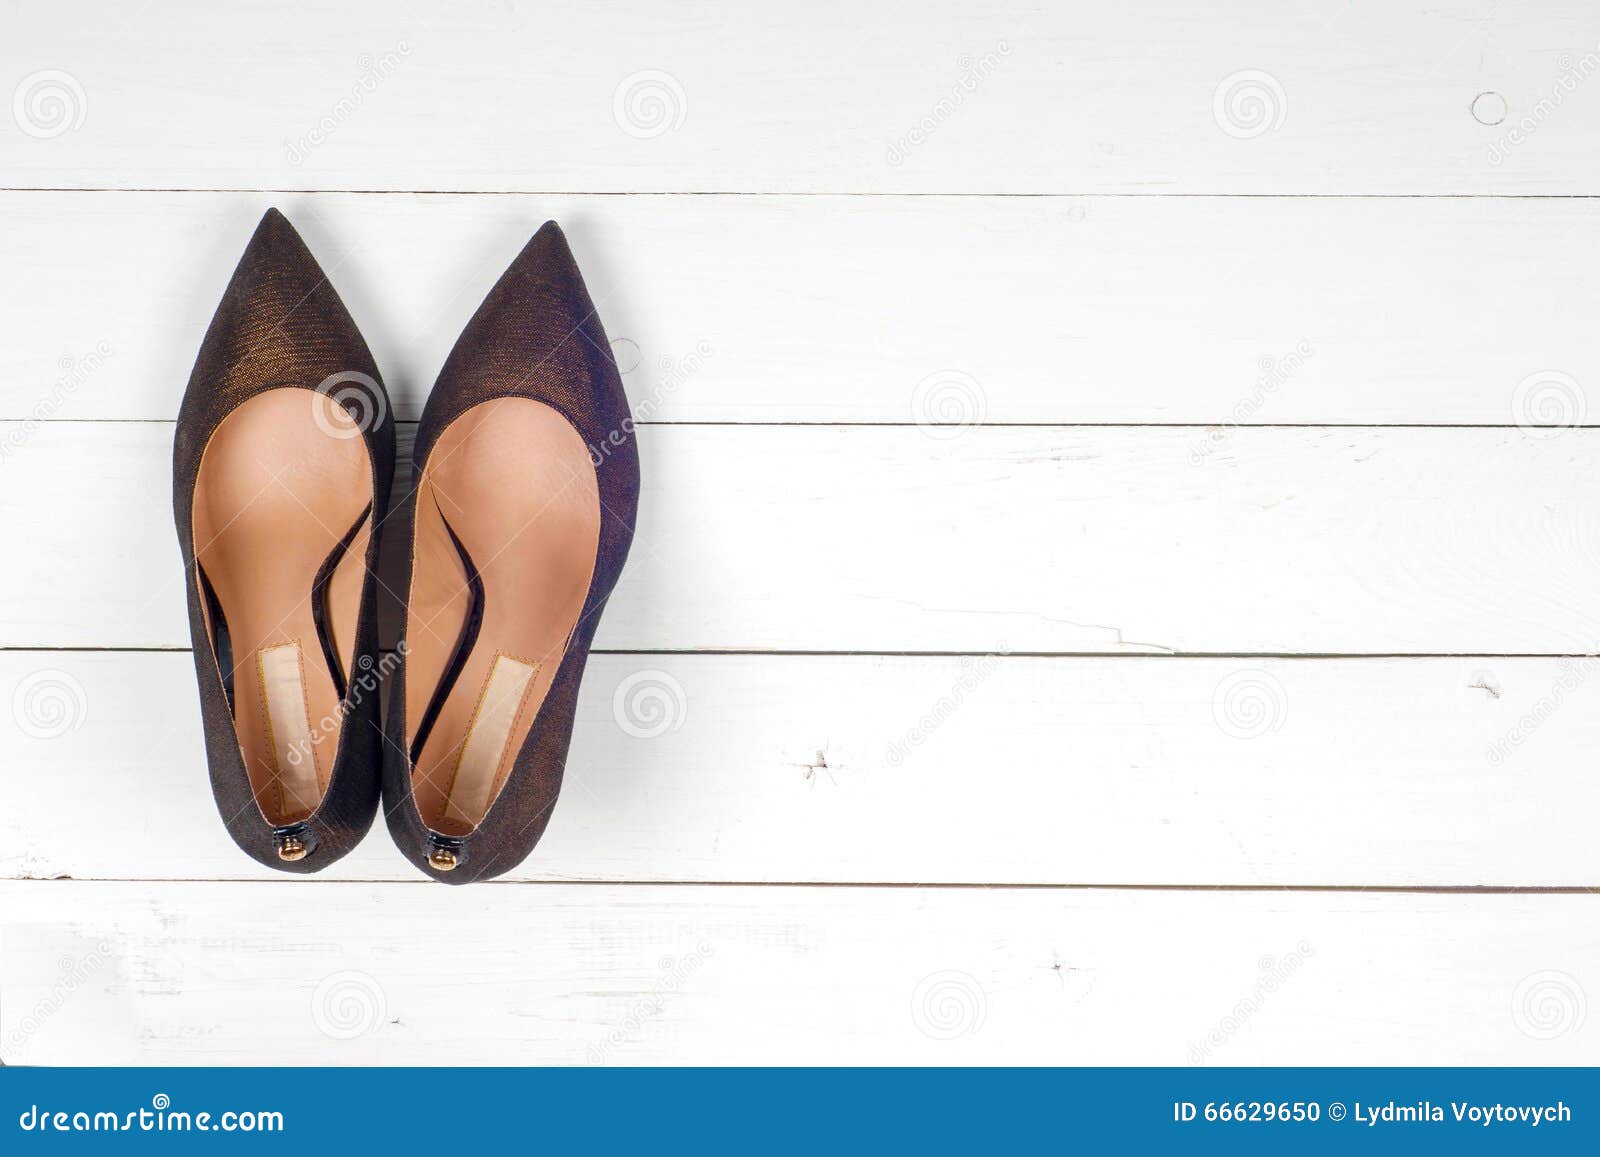 Female fashion with shoes stock photo. Image of shiny - 66629650